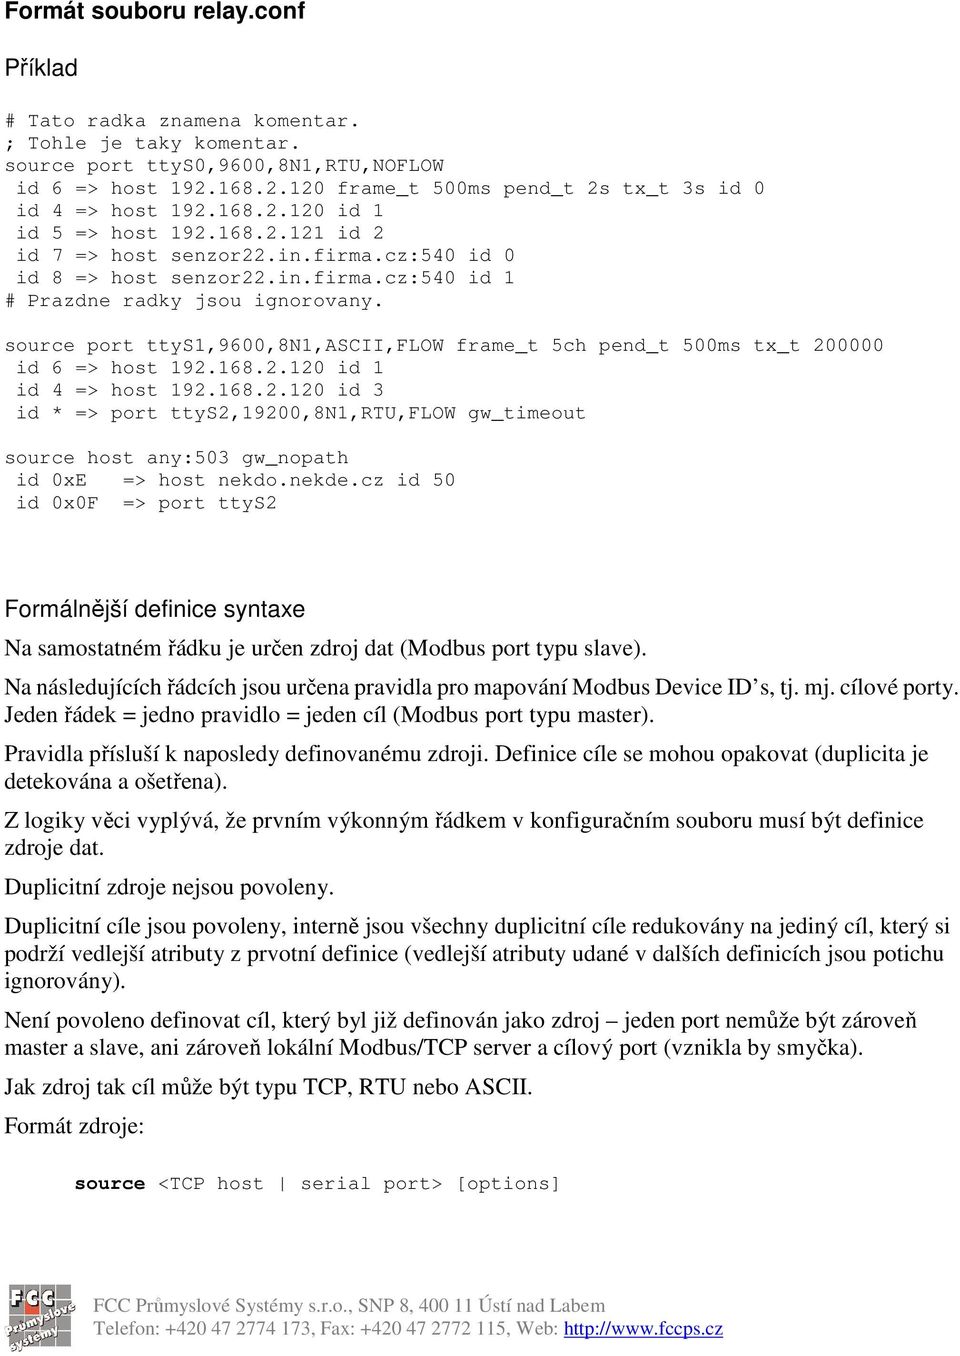 source port ttys1,9600,8n1,ascii,flow frame_t 5ch pend_t 500ms tx_t 200000 id 6 => host 192.168.2.120 id 1 id 4 => host 192.168.2.120 id 3 id * => port ttys2,19200,8n1,rtu,flow gw_timeout source host any:503 gw_nopath id 0xE => host nekdo.